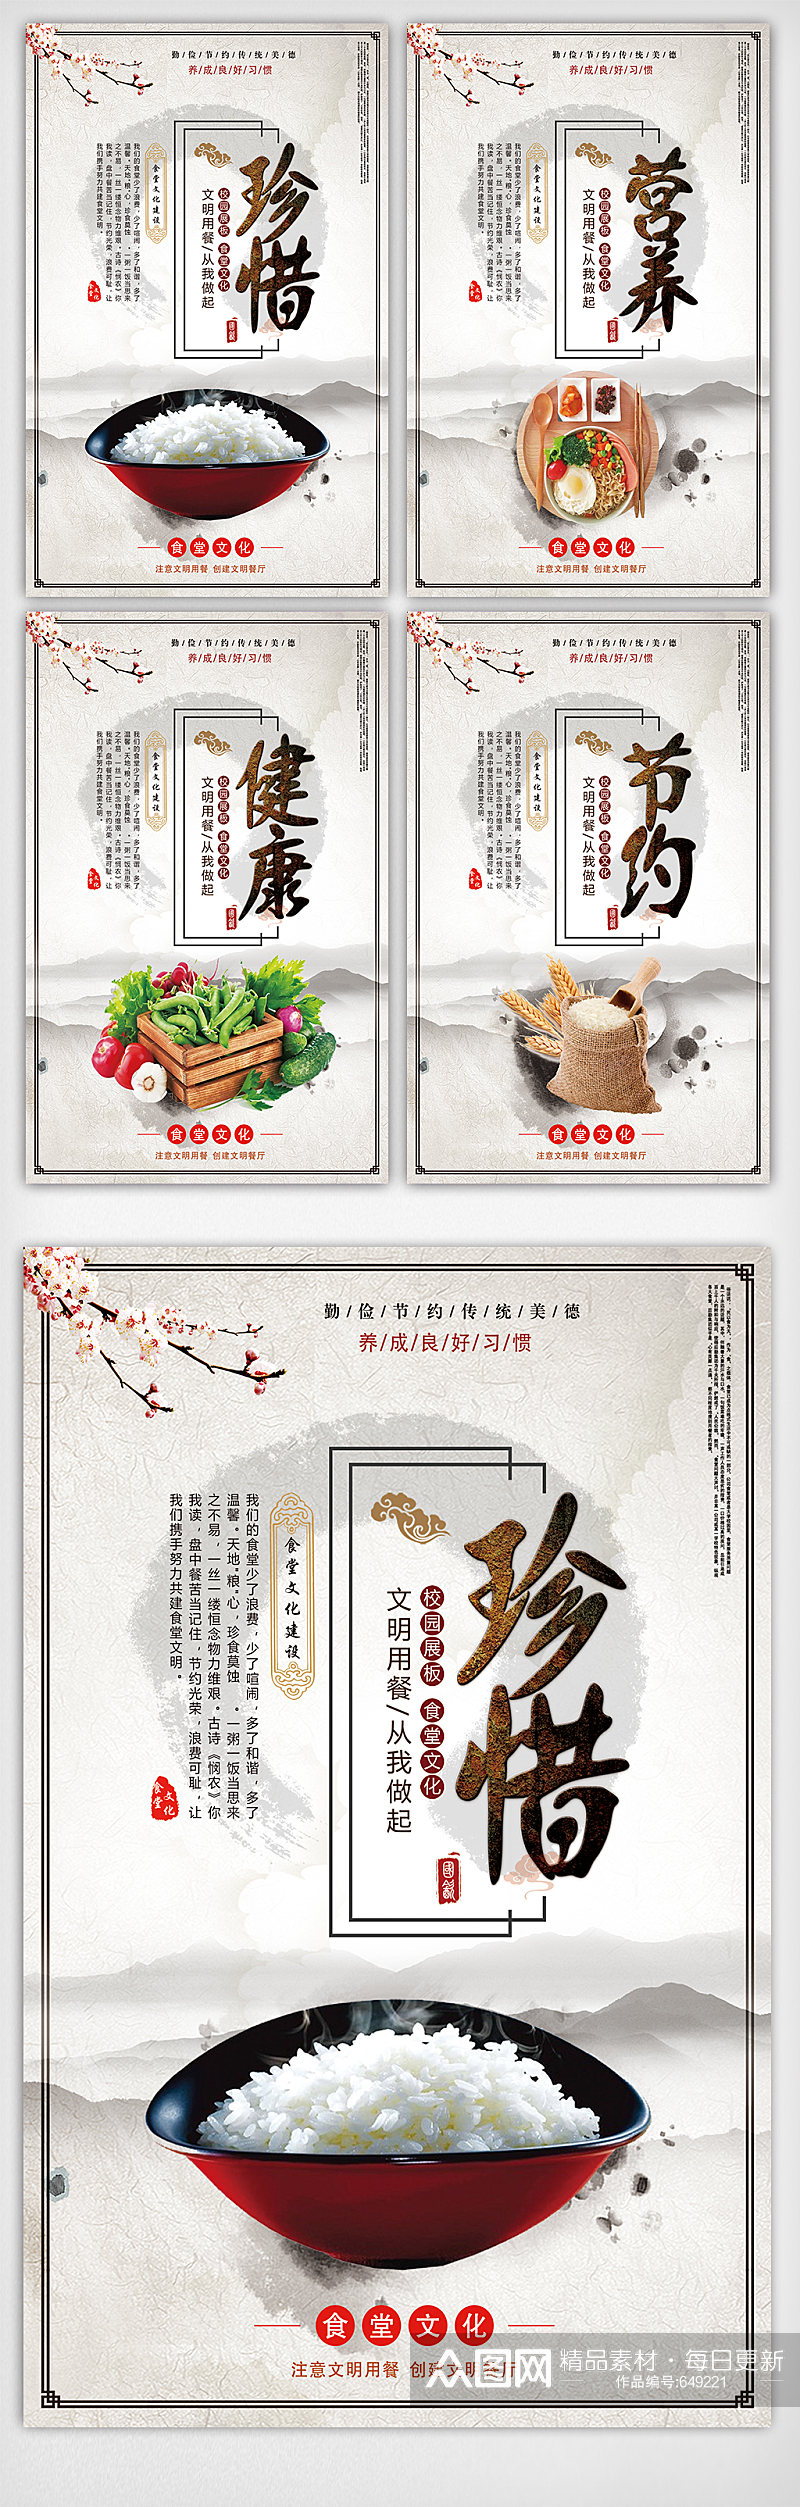 中国风校园食堂文化宣传挂画素材素材